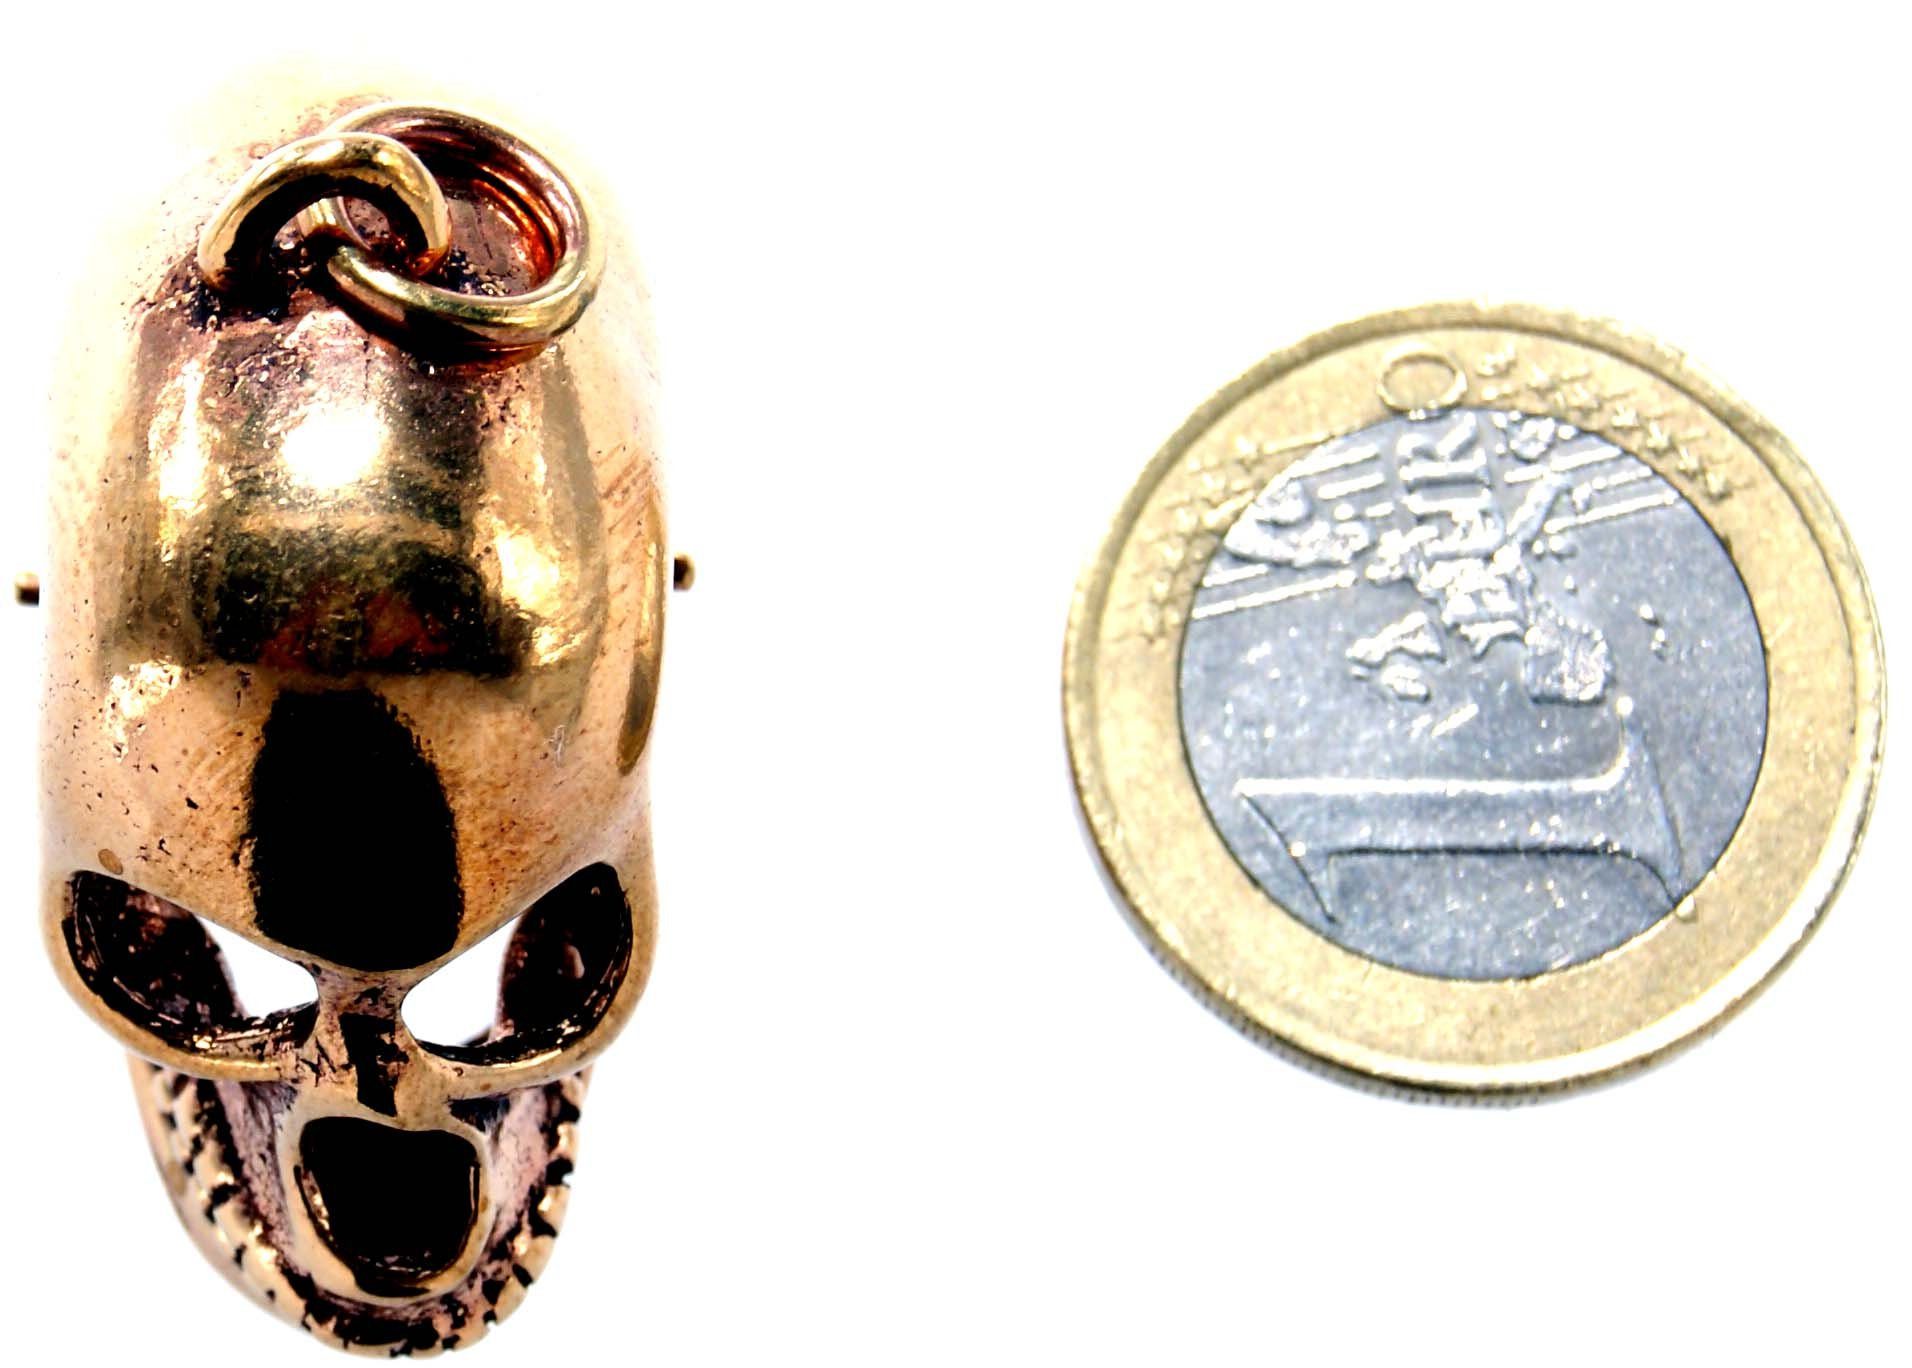 großer Bronze Kettenanhänger Schädel Biker Leather Rocker Kiss of Totenkopf Anhänger Skull